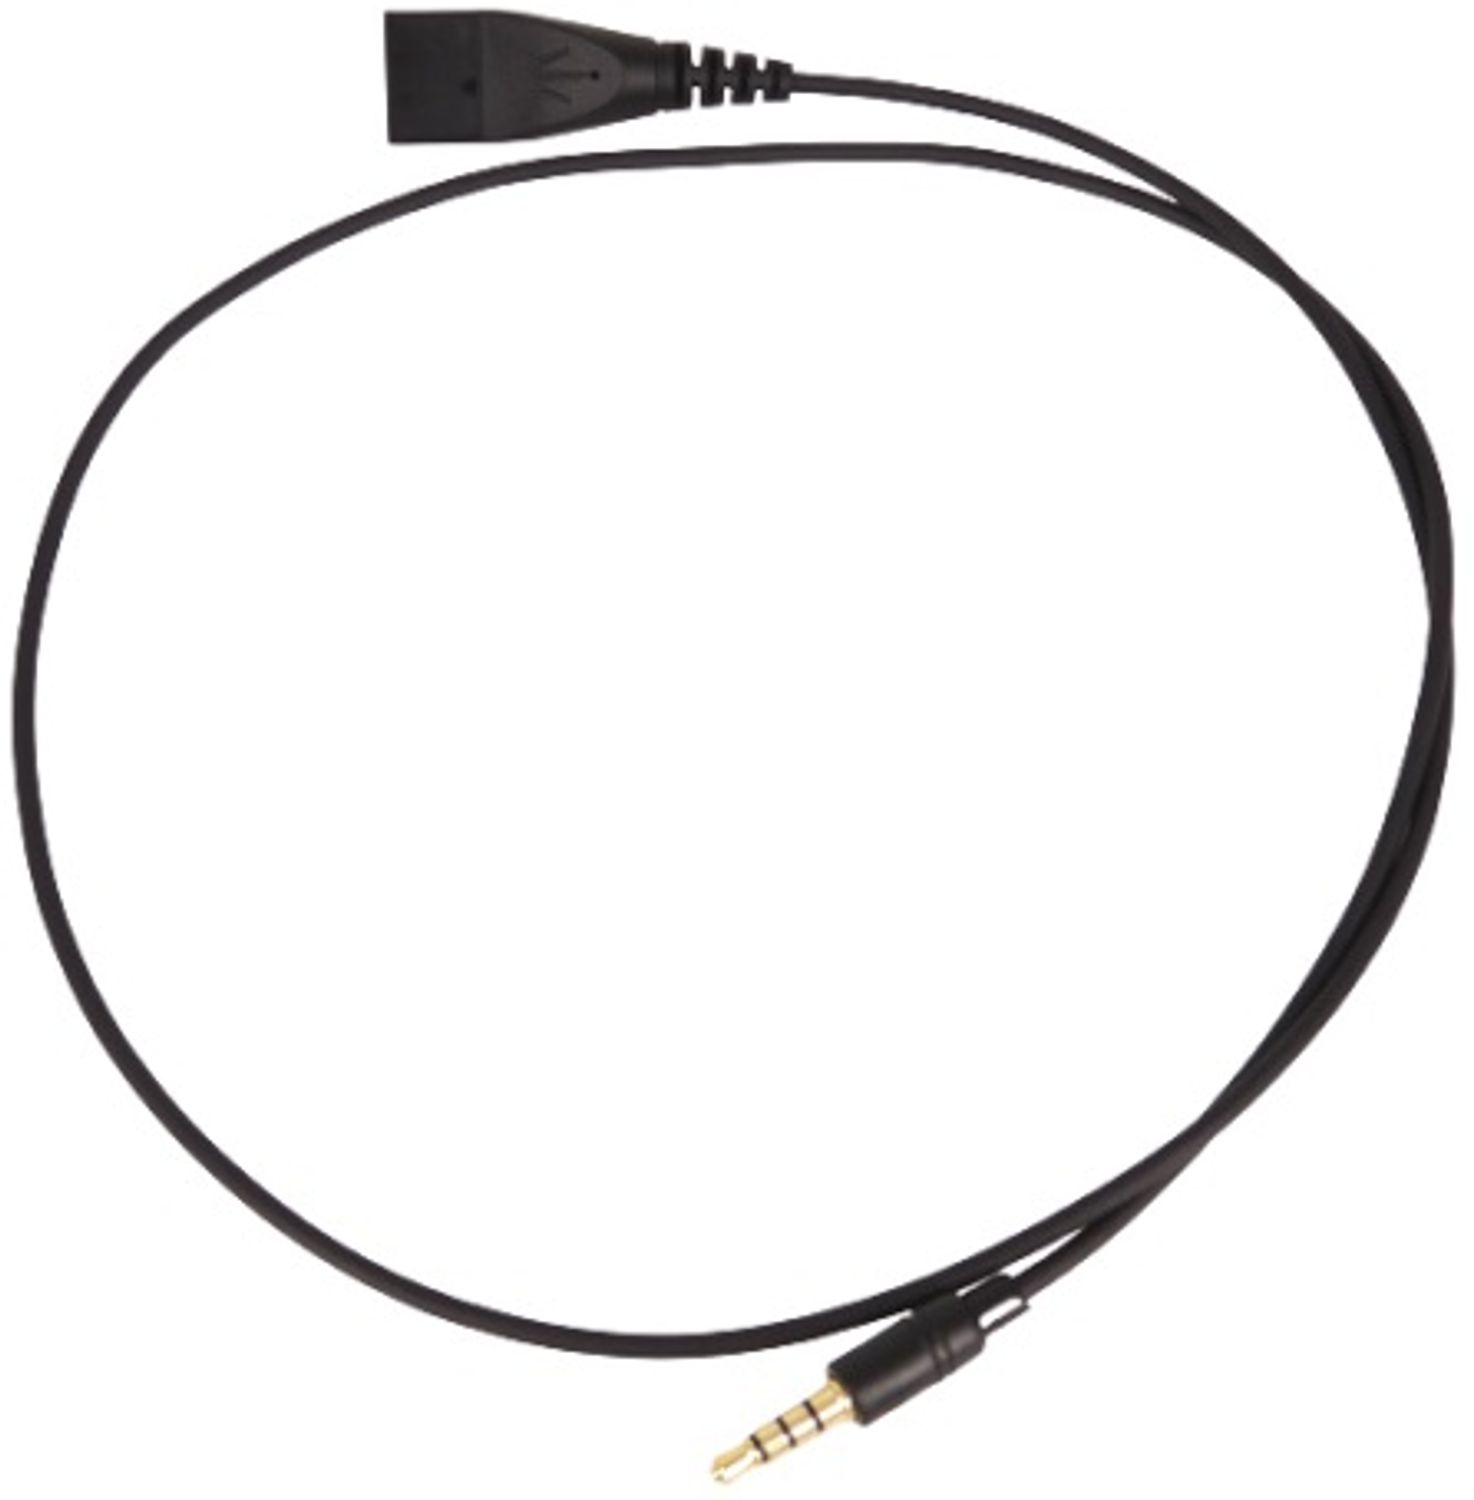 Headset - 3,5mm-Klinke-Kabel Zubehör GEQUDIO mit Schwarz C6 für kompatibel einzeln FritzFon